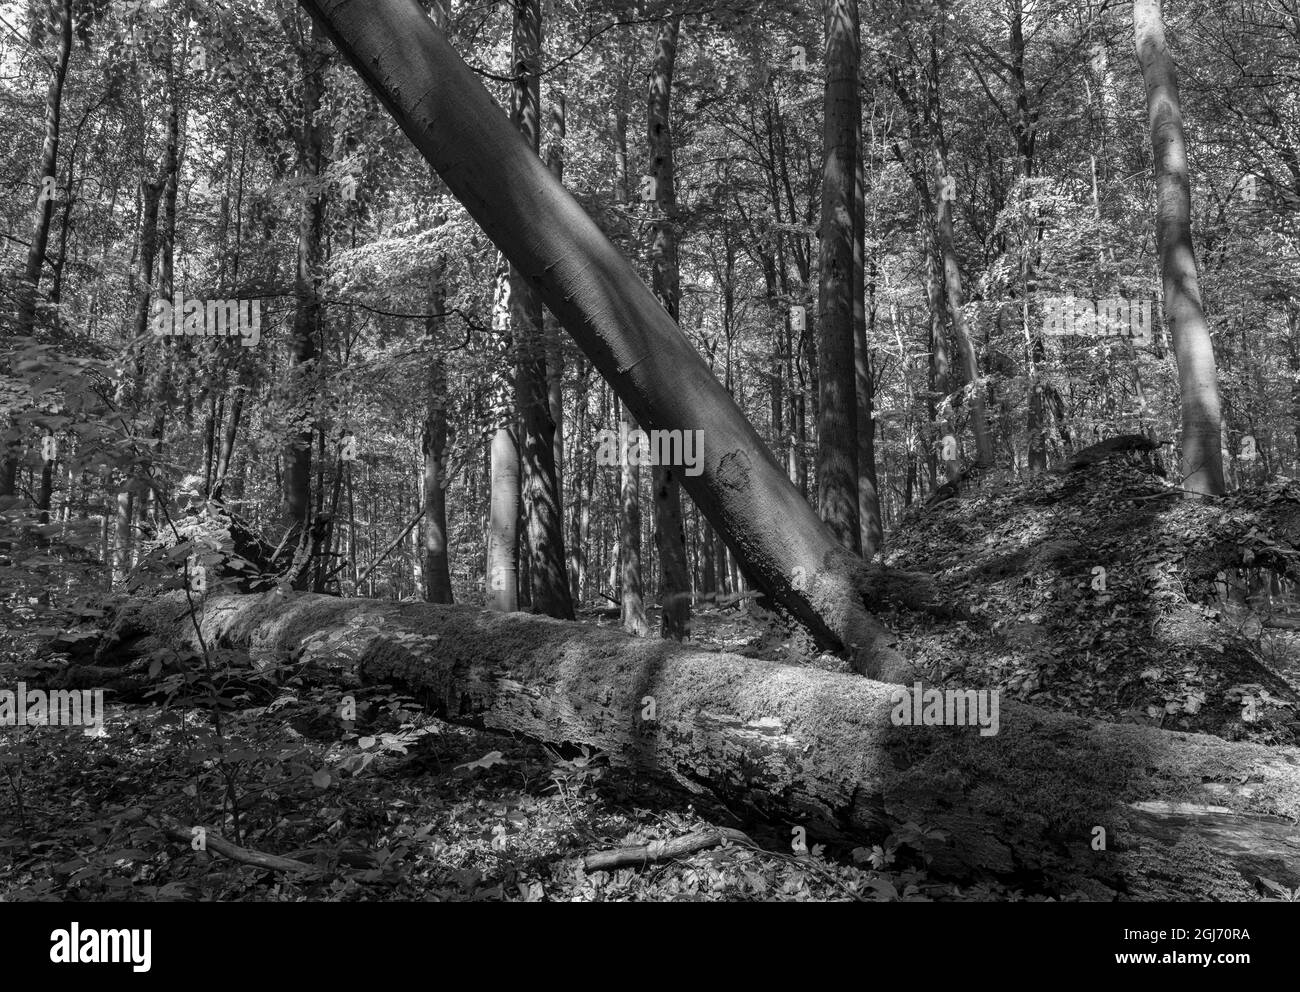 Bois mort, débris ligneux grossiers et arbres tombés dans la forêt de Hainich en Thuringe, parc national et une partie du site du patrimoine mondial de l'UNESCO. Primeva Banque D'Images